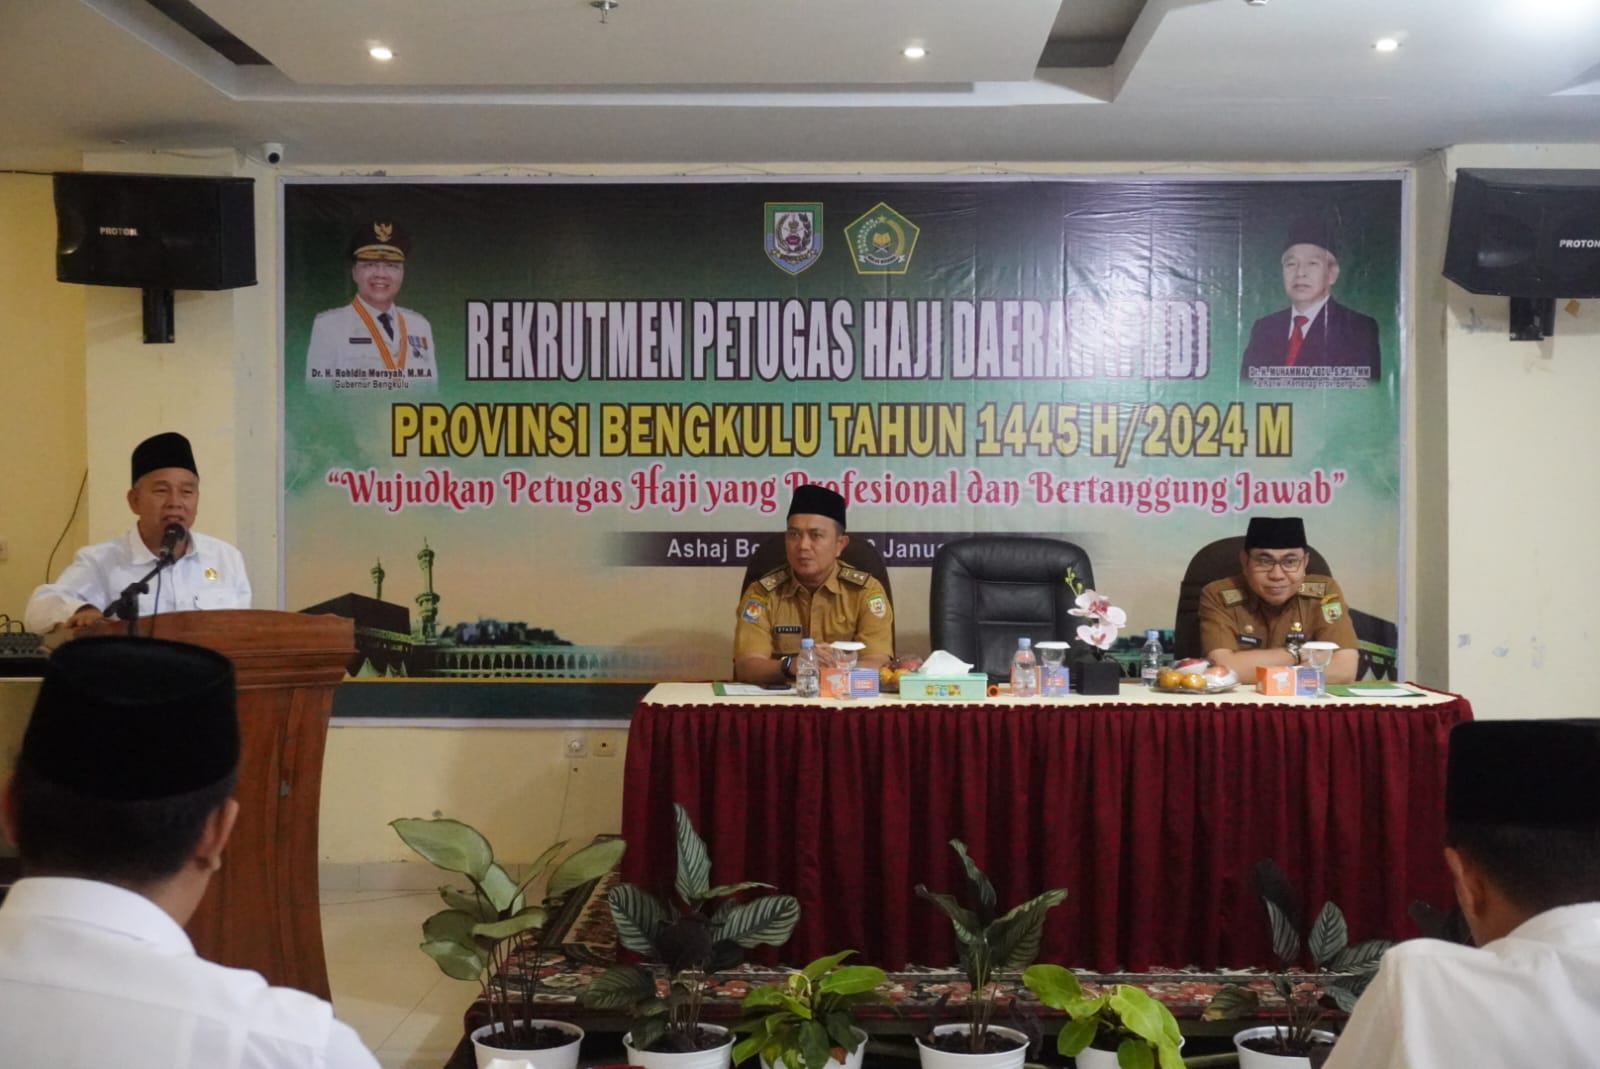 30 Calon Petugas Haji  Daerah (PHD) dari Bengkulu Jalani Tes Akhir 